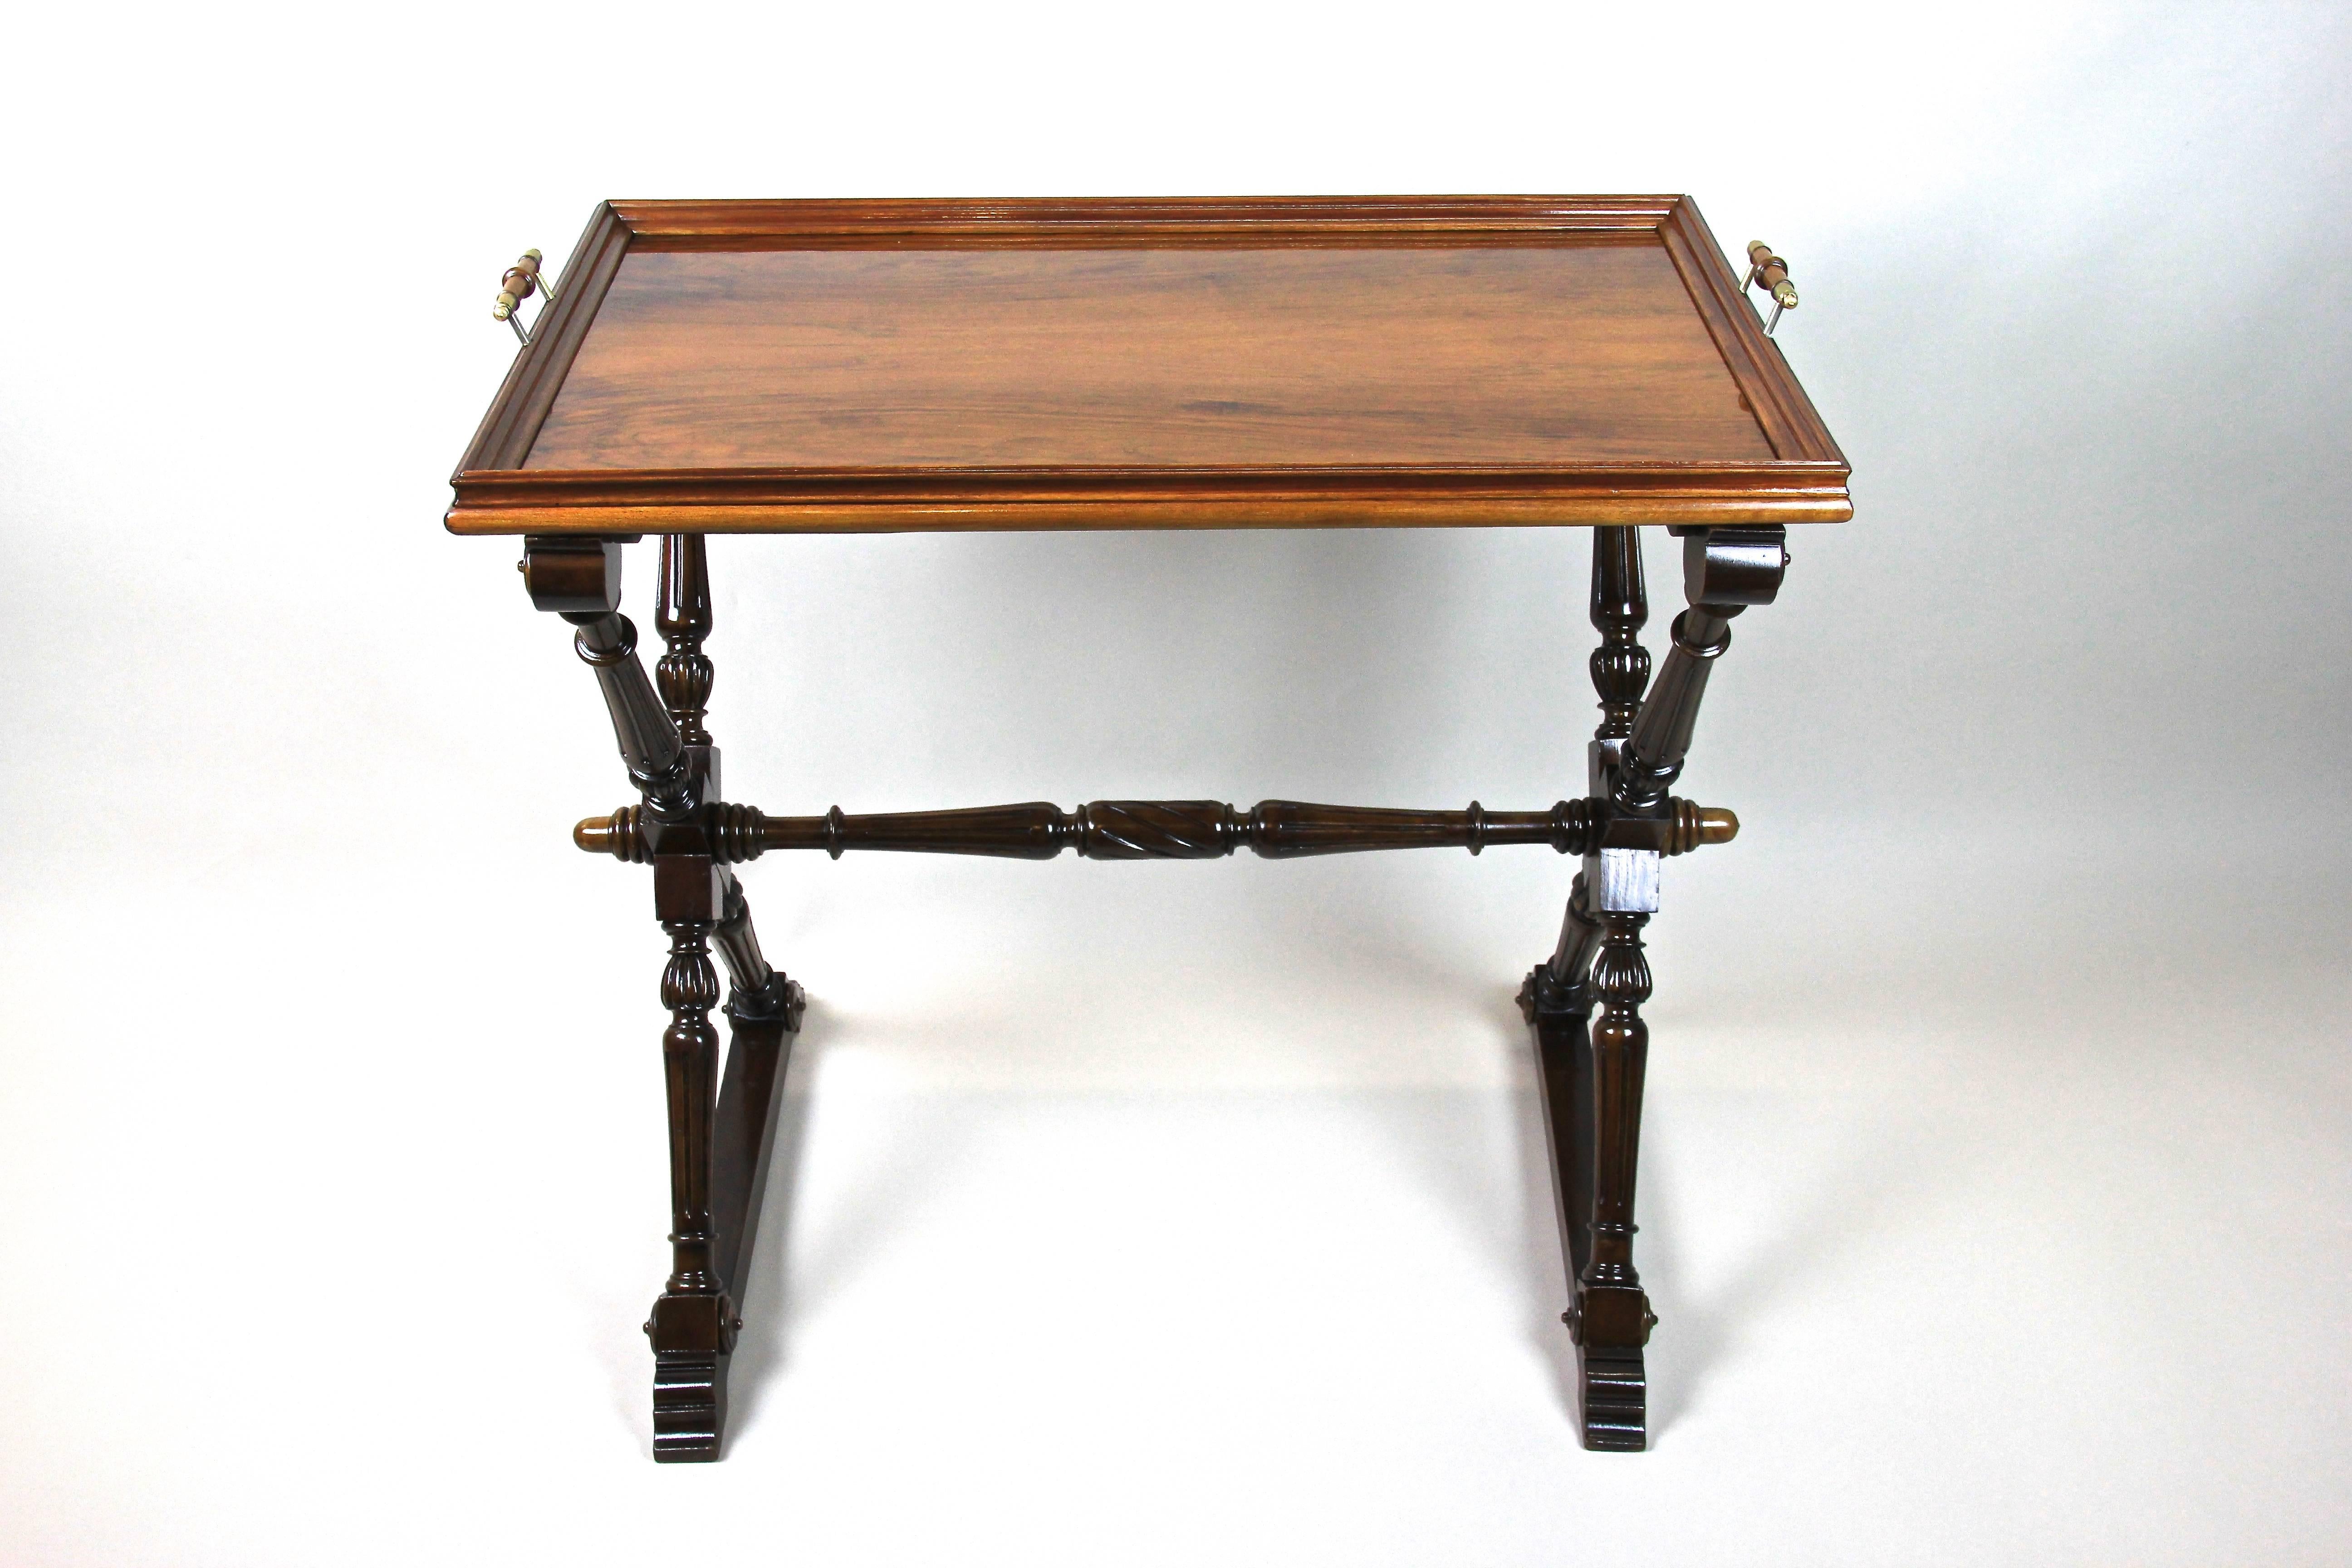 Schöner barocker Revival-Tisch mit abnehmbarem Tablett aus Österreich, Ende des 19. Jahrhunderts, um 1870. Das kunstvoll von Hand geschnitzte Stück aus massivem Nussbaum hat toll gestaltete Beine und kommt mit einem schönen Highlight - einer